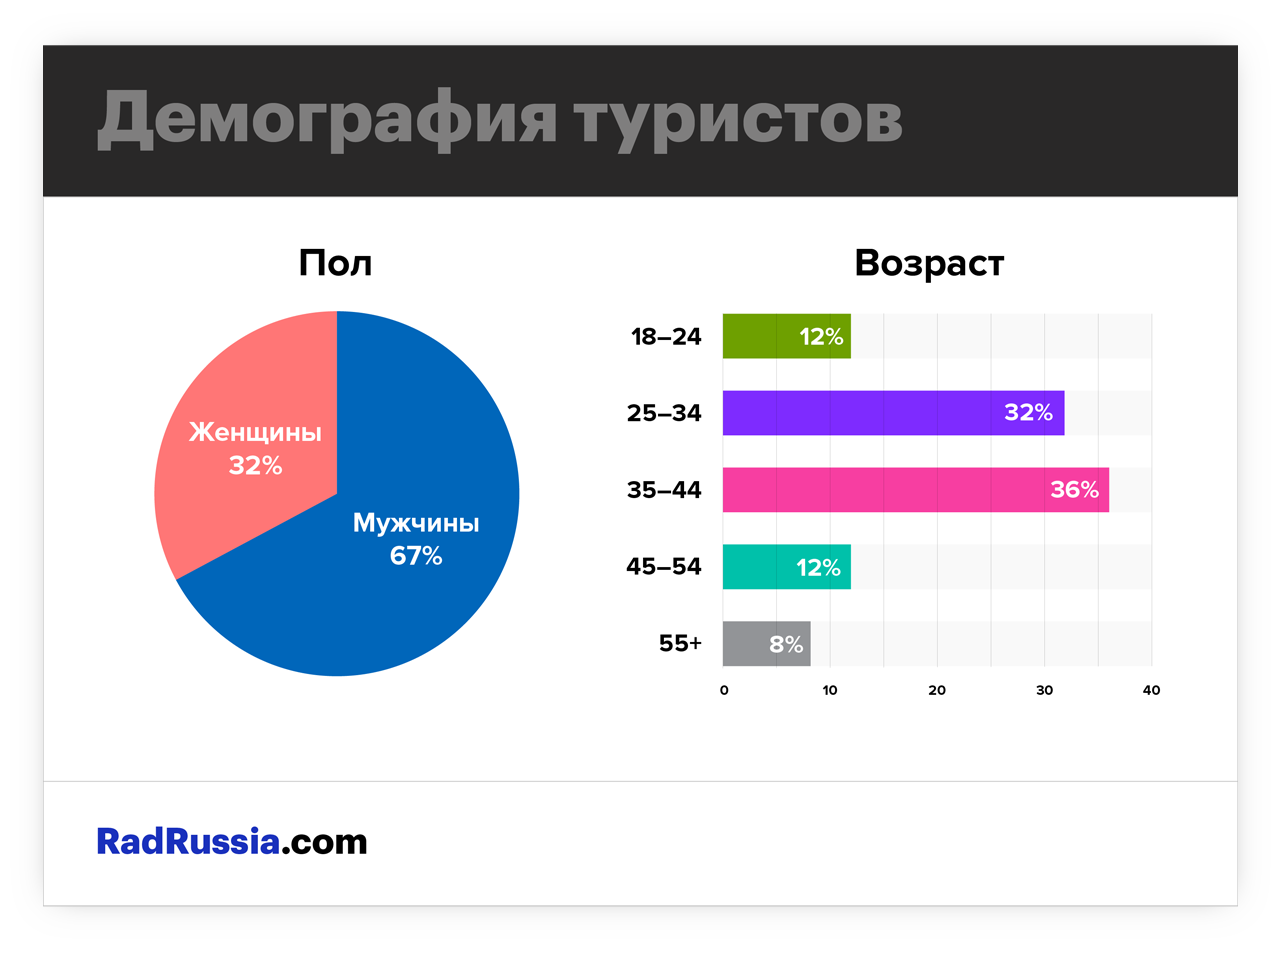 Демографическая статистика туристов в Росии по ЧМ 2018